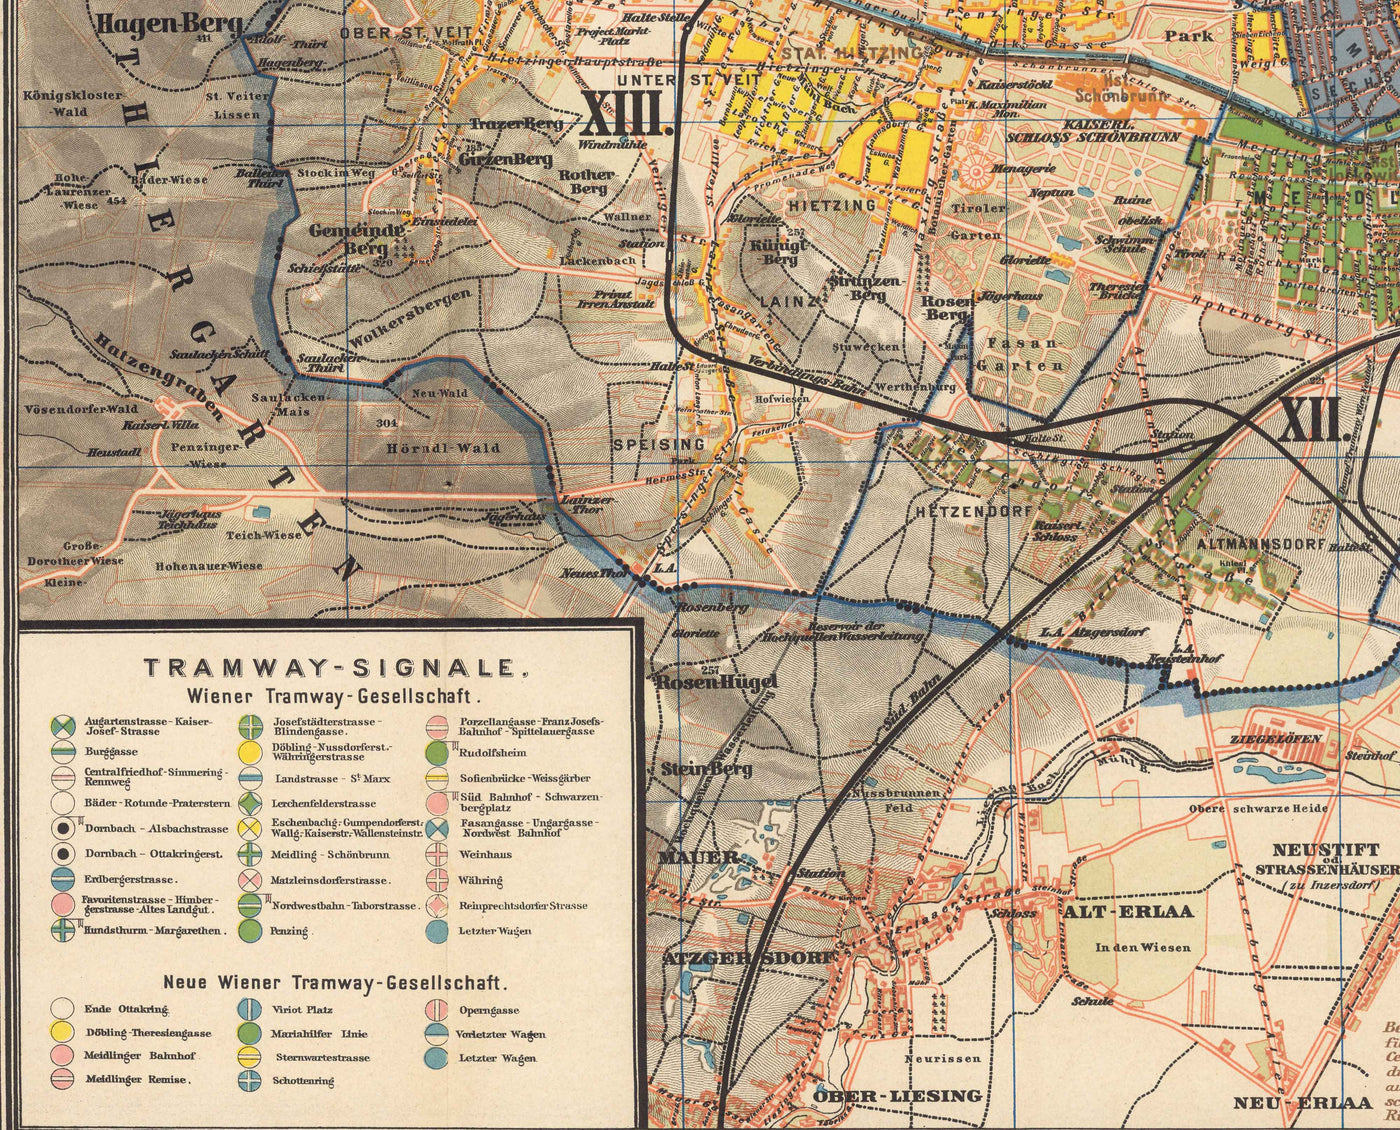 Alte Karte von Wien von Gustav Freytag aus dem Jahr 1895 – Innere Stadt, Leopoldstadt, Wieden, Margareten, Landstraße